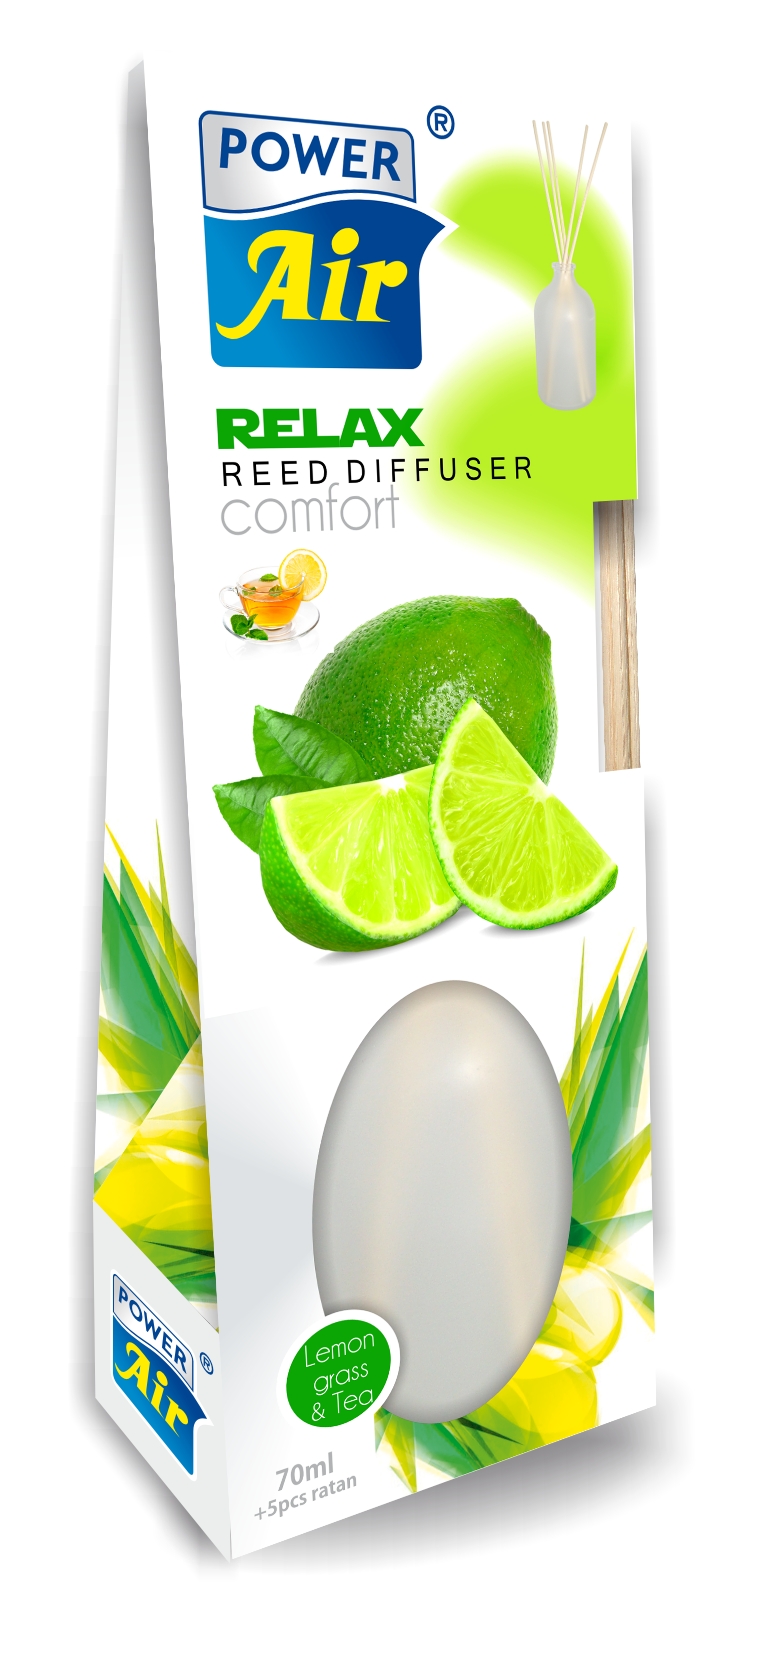 Power Air Relax diffuser 70 ml Lemon gras & Tea